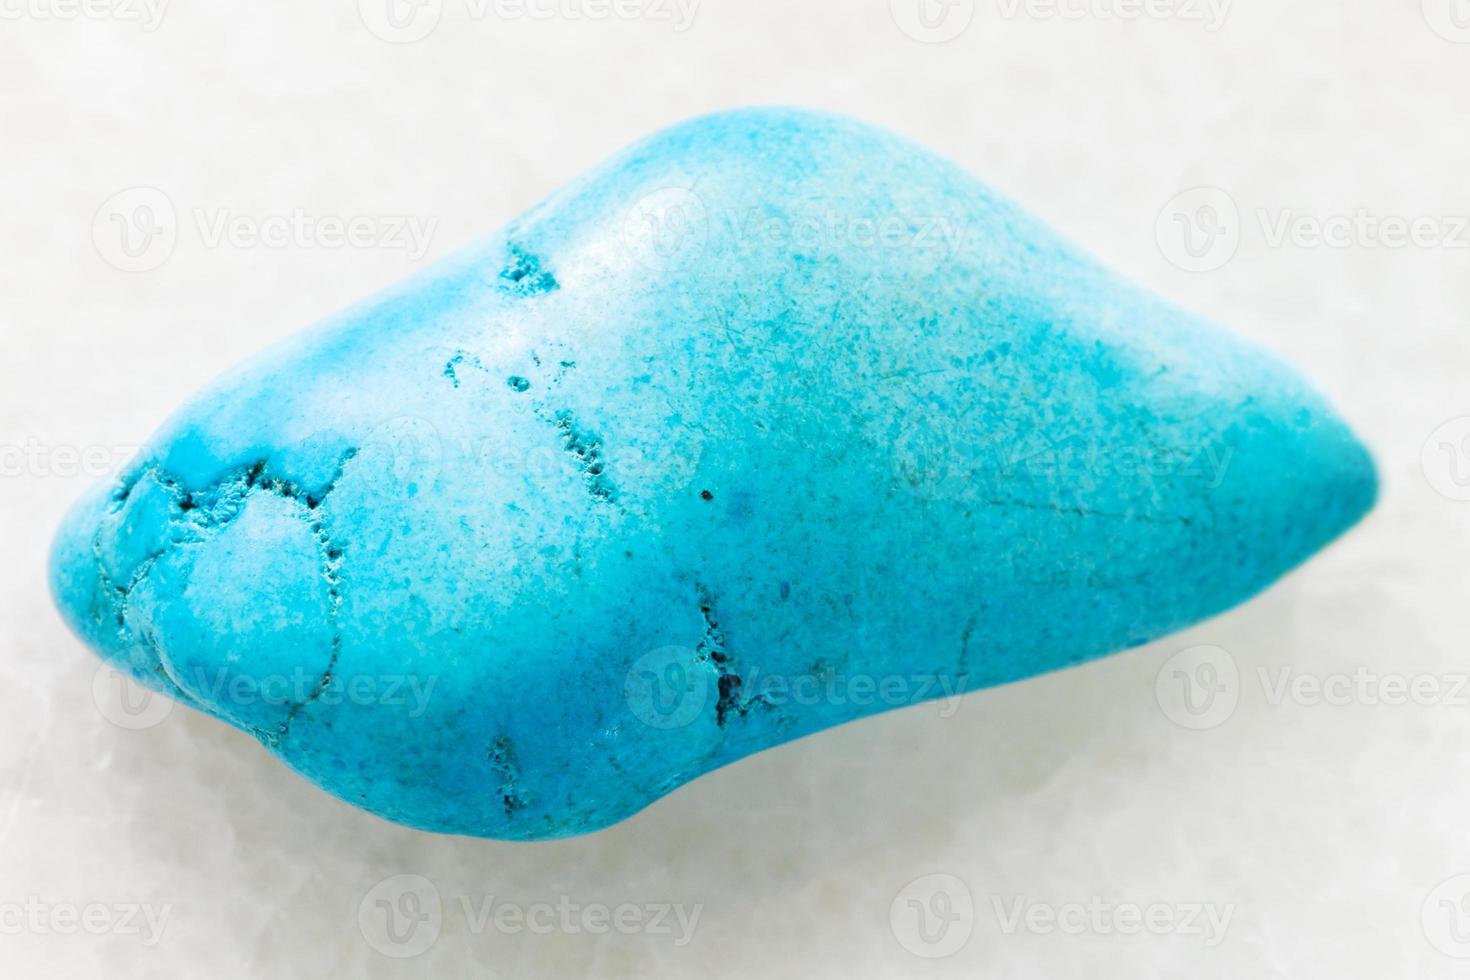 gemme de howlite bleu turquoisenite dégringolé sur blanc photo